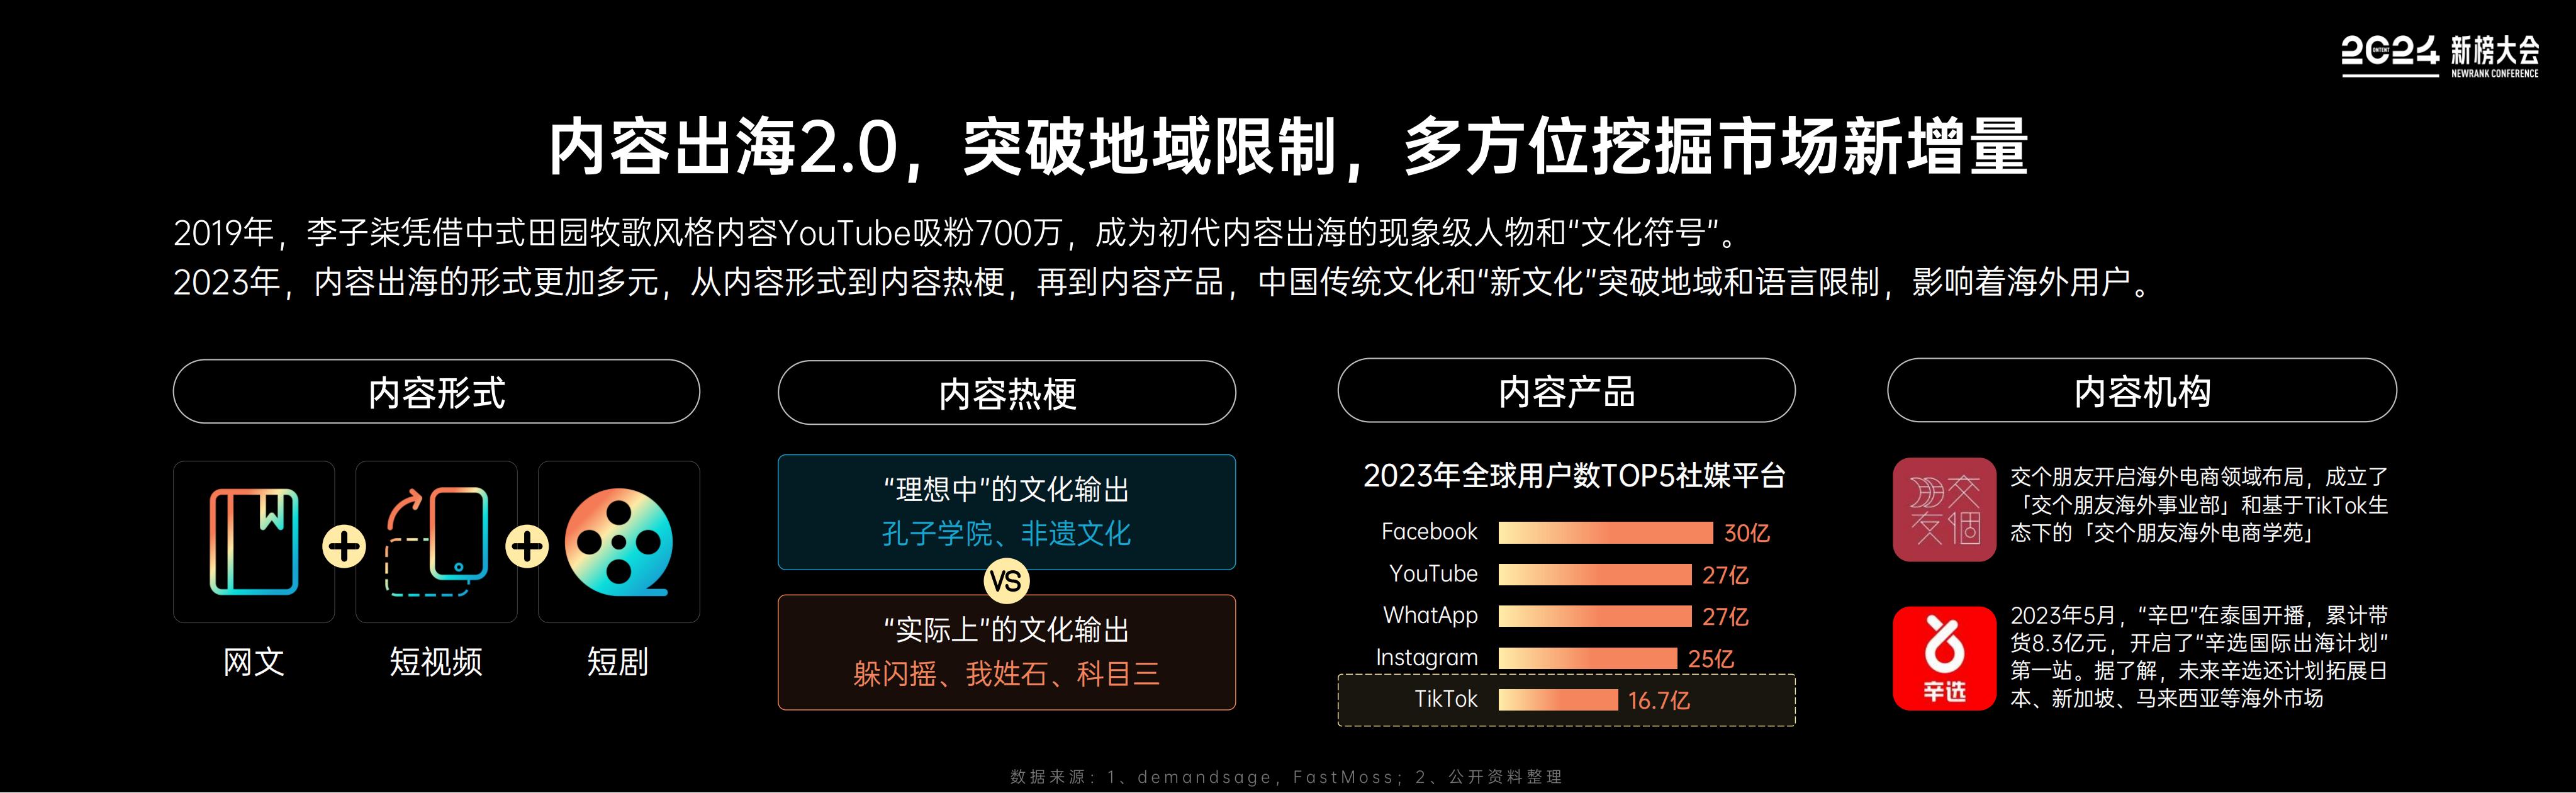 【新榜】2024内容产业年度报告_16.jpg